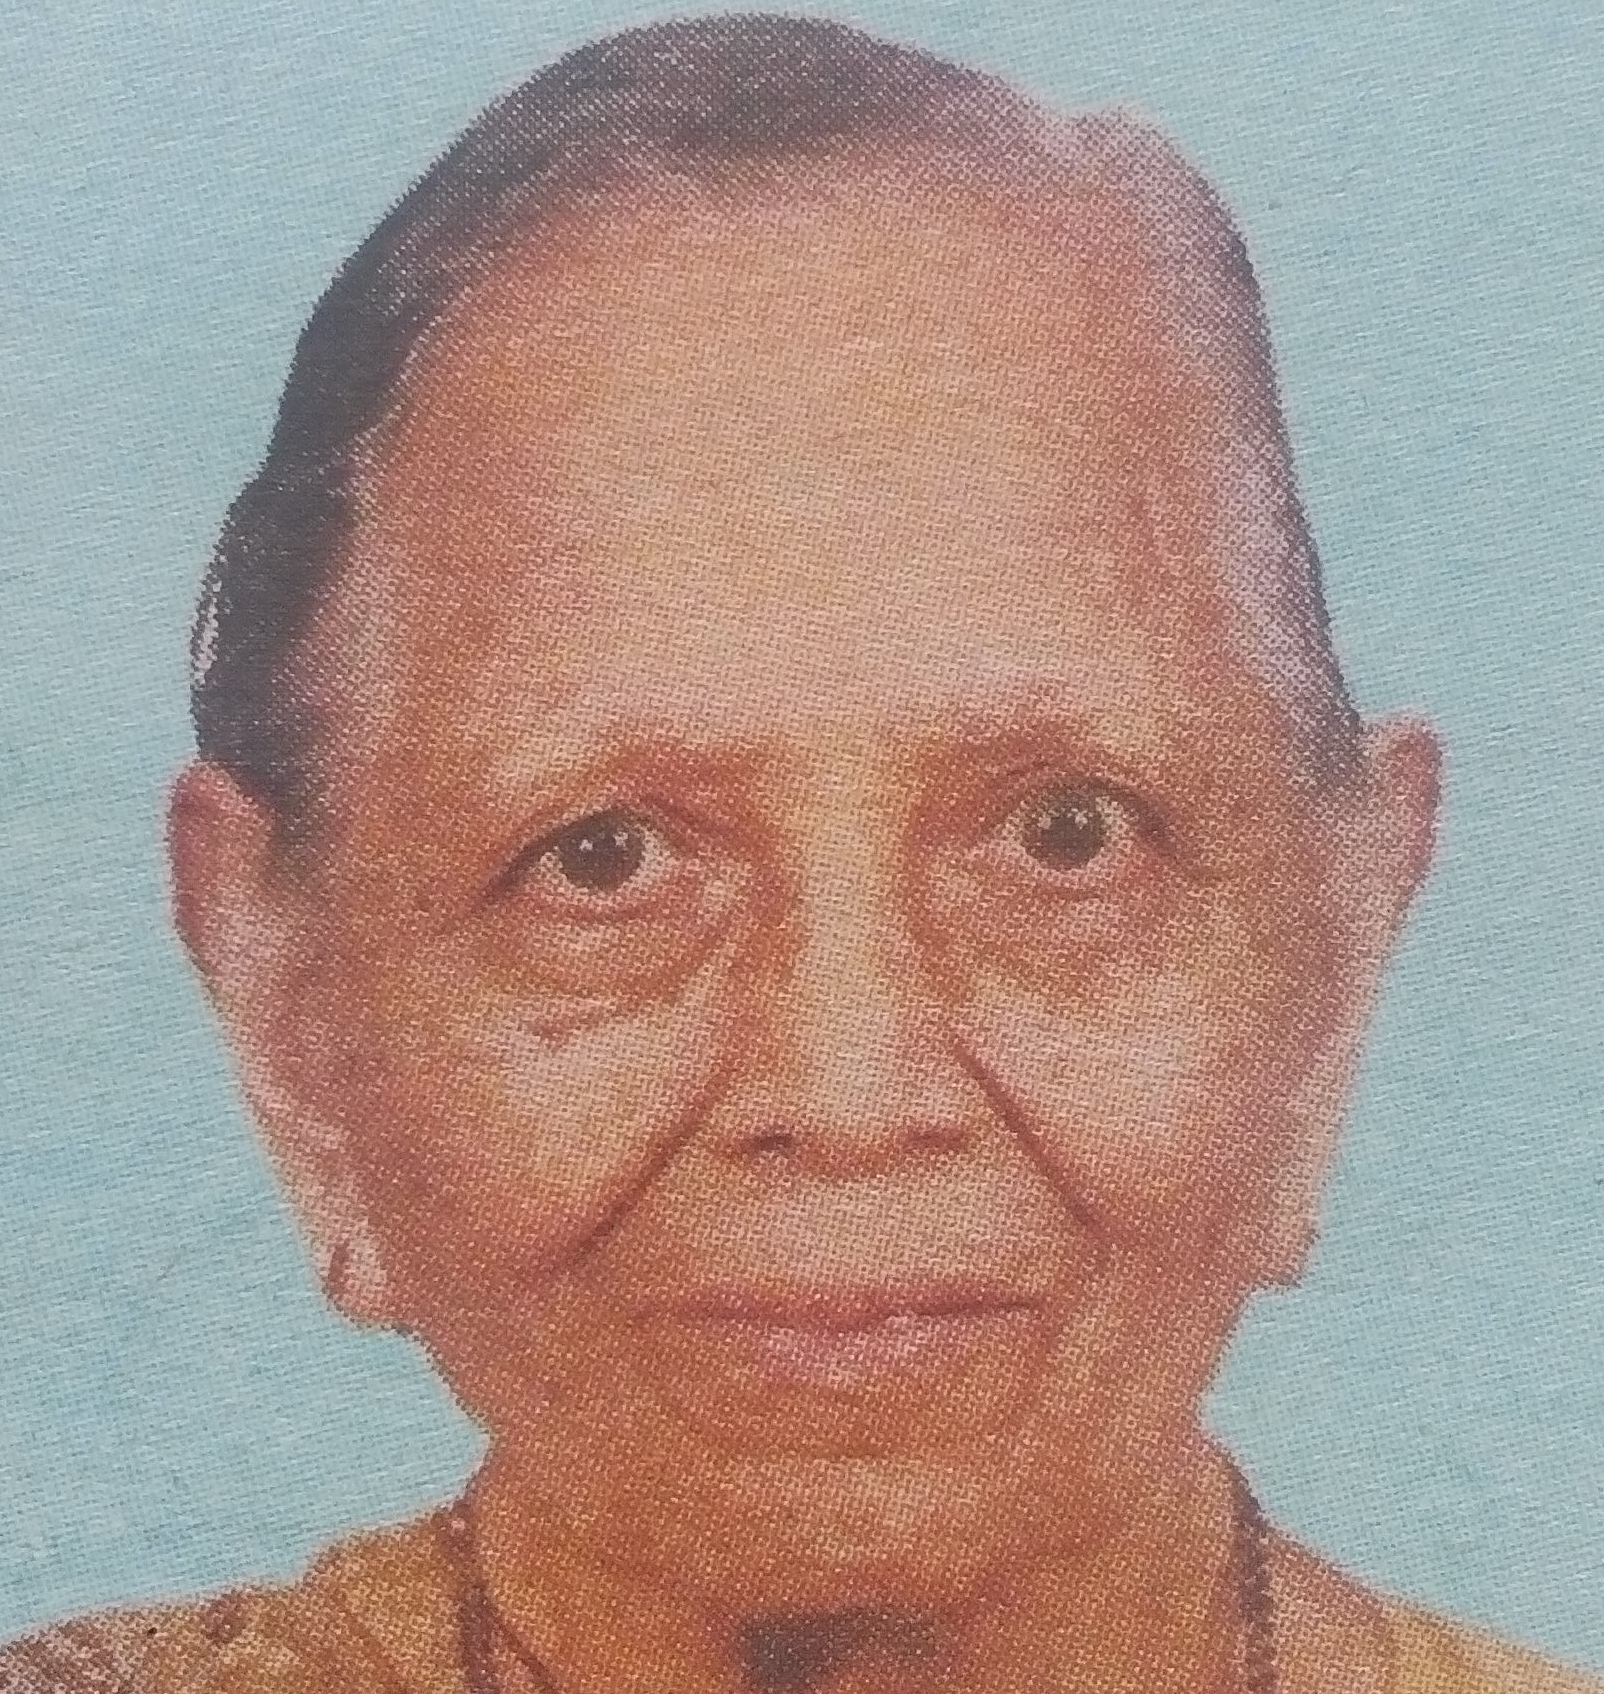 Obituary Image of Jashodaben Jayantilal Patel